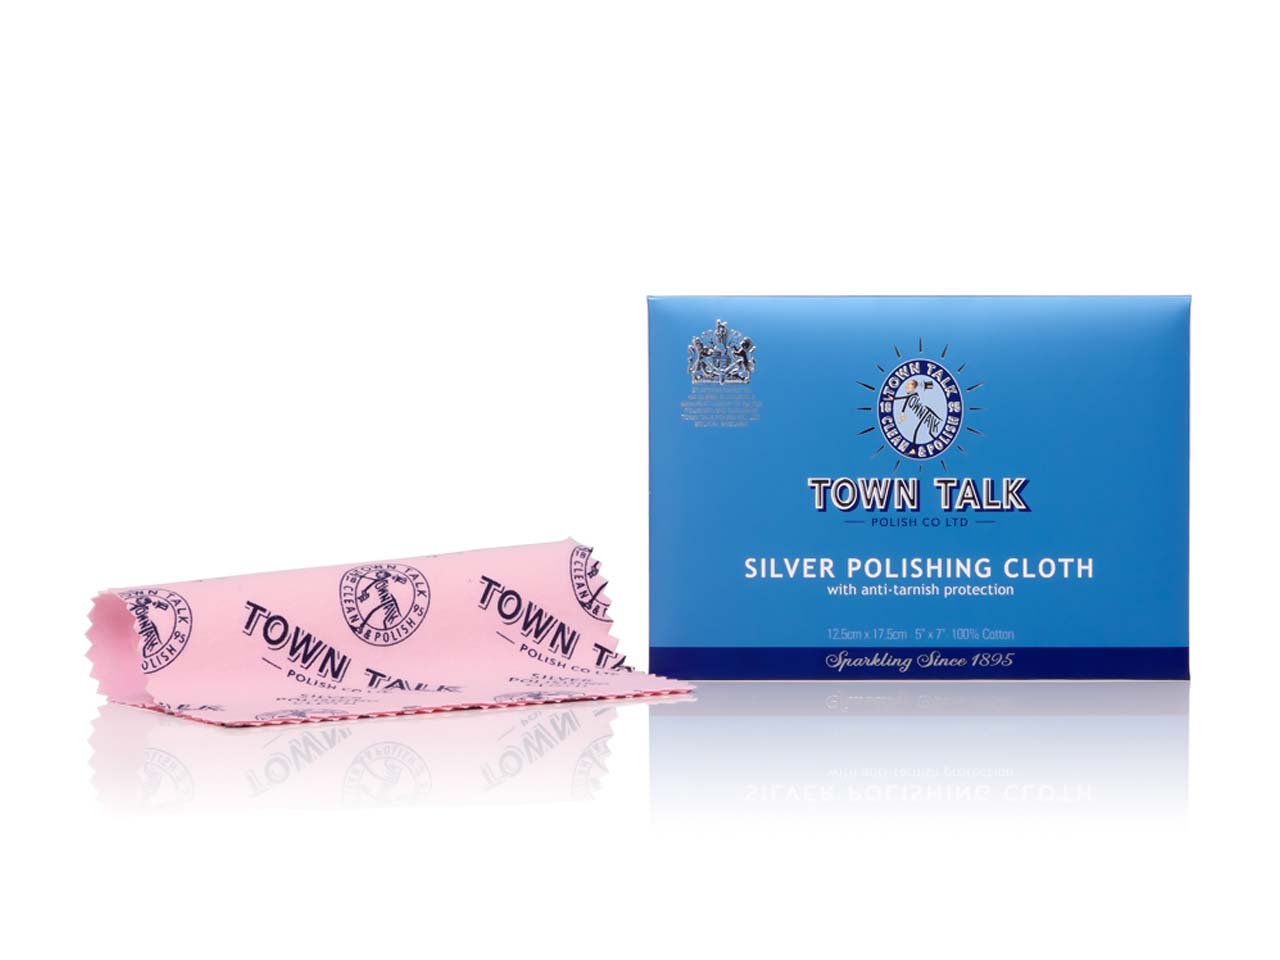 Town Talk Polish Co. Ltd